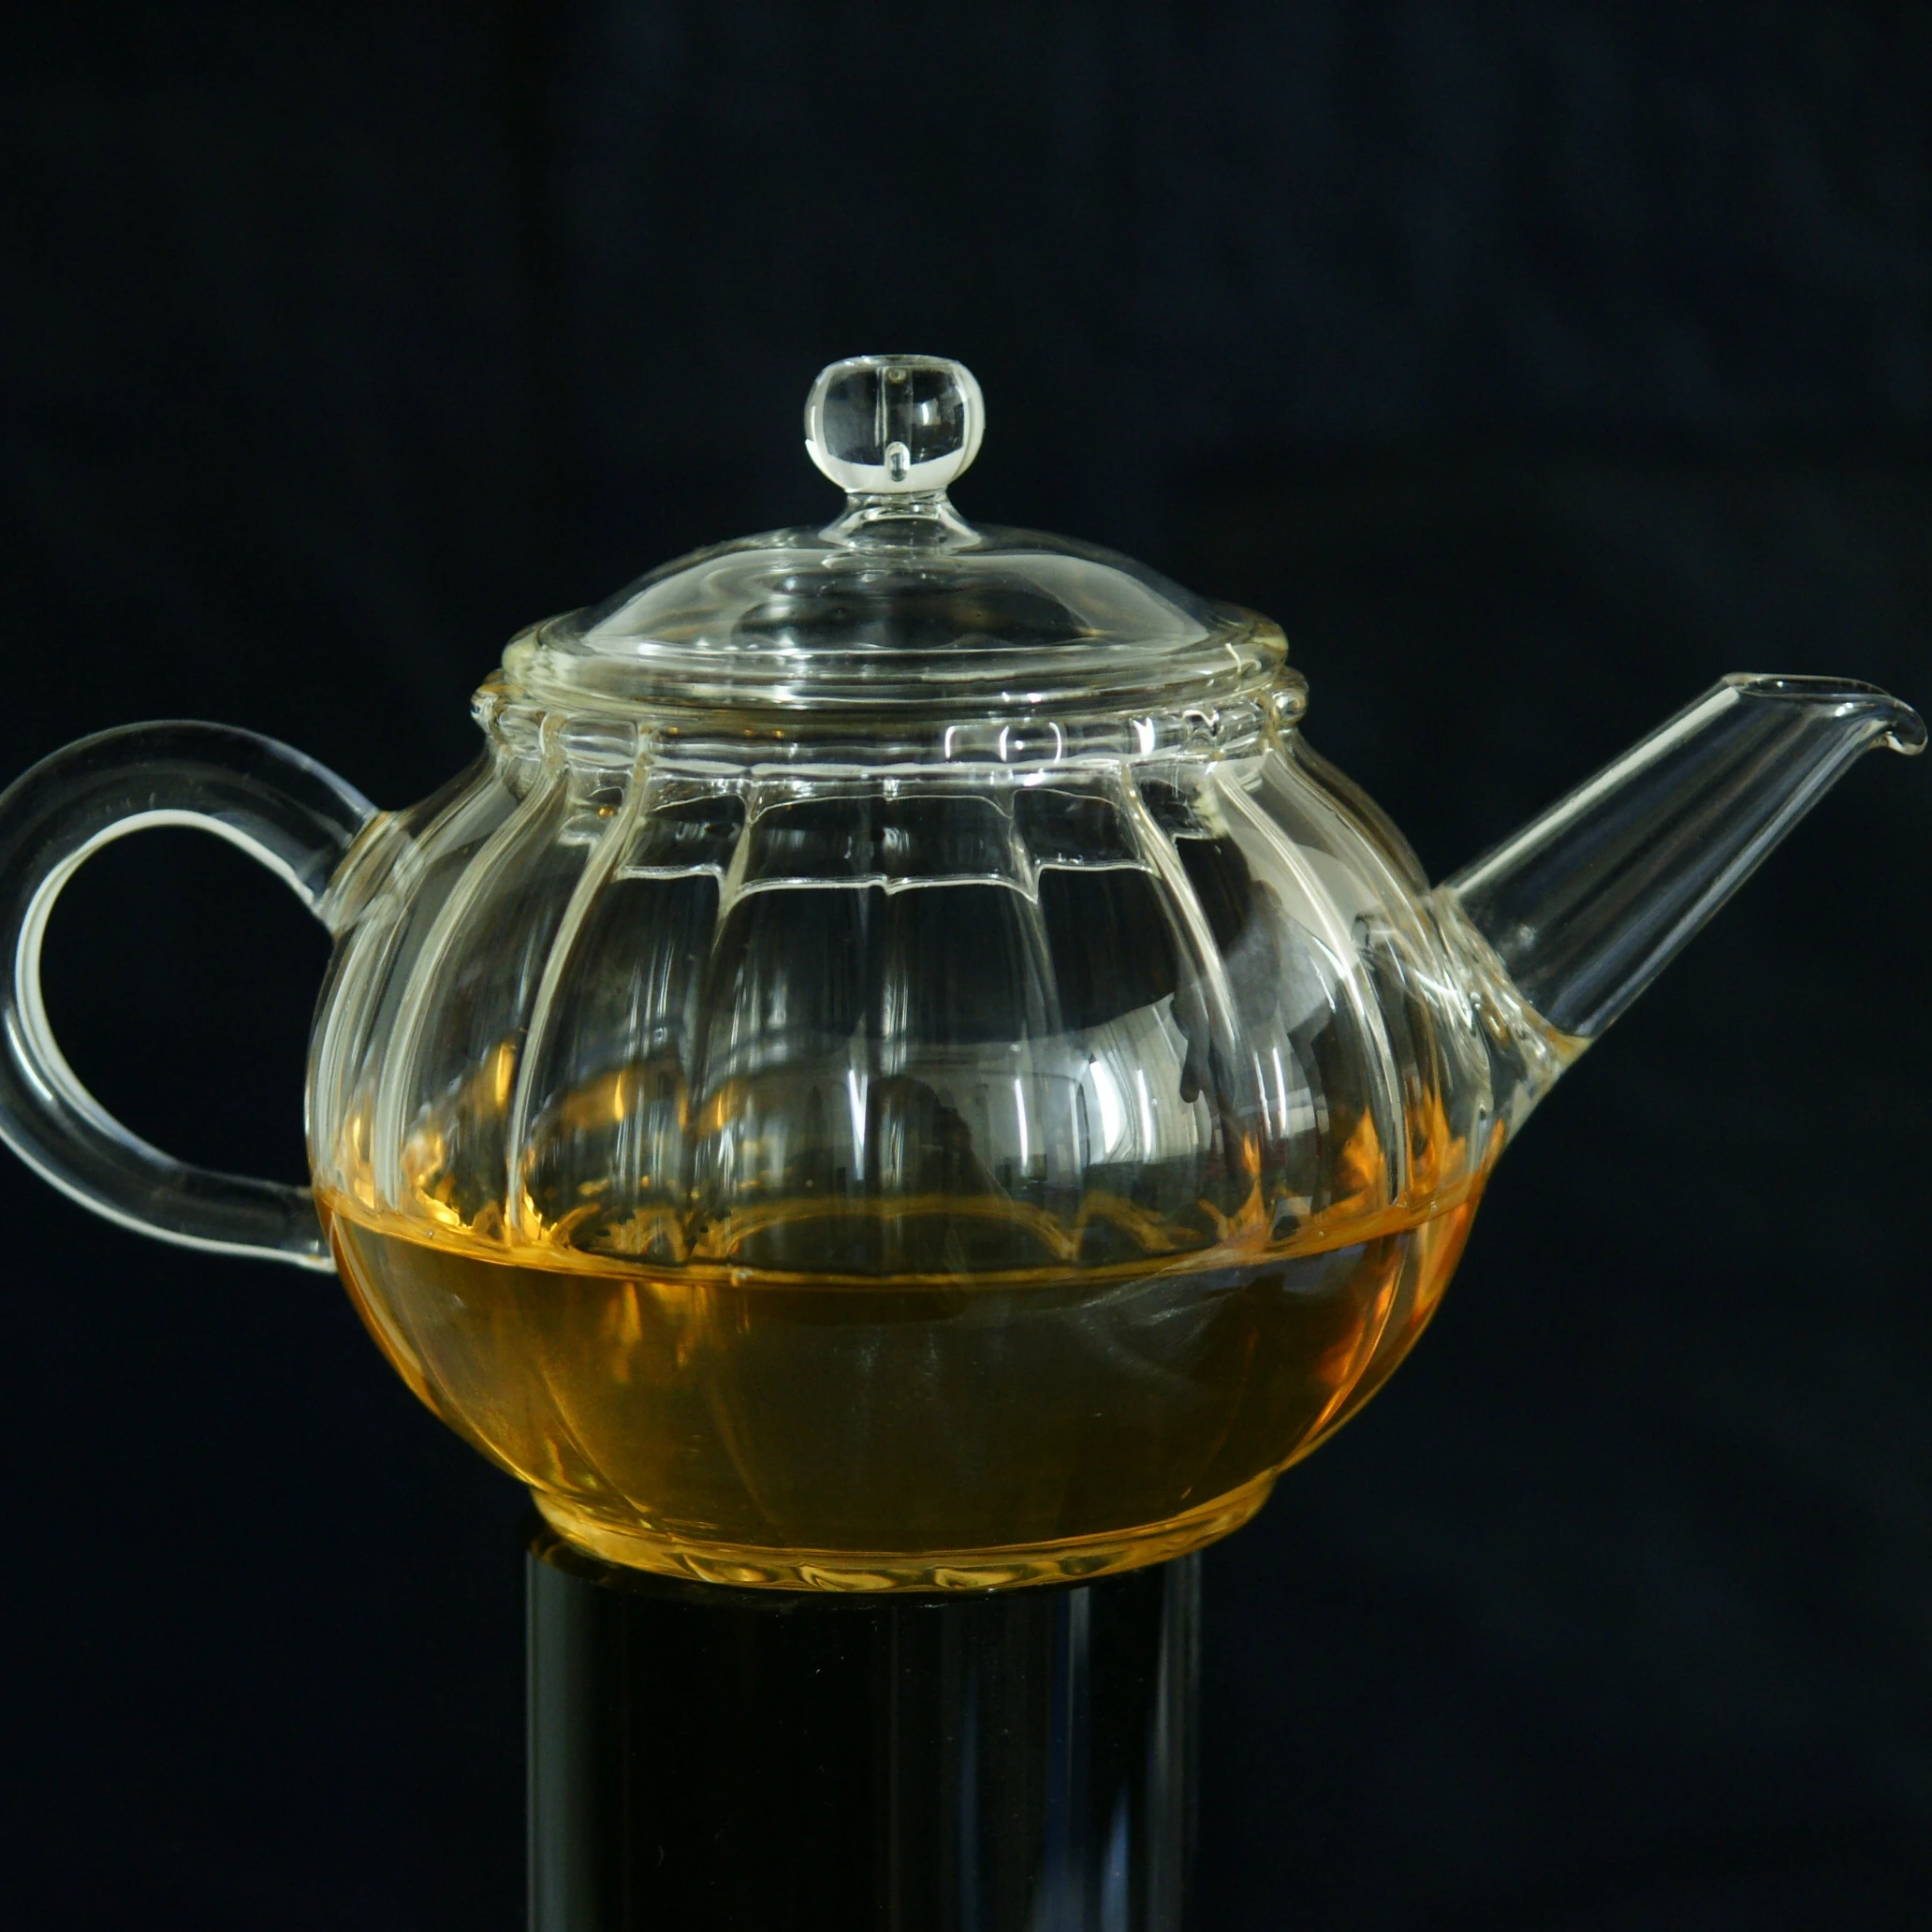 Pots à thé en vrac Théière en verre résistant à la chaleur avec infuseur amovible Micro-ondes et coffre-fort Théière 800ml / 28oz